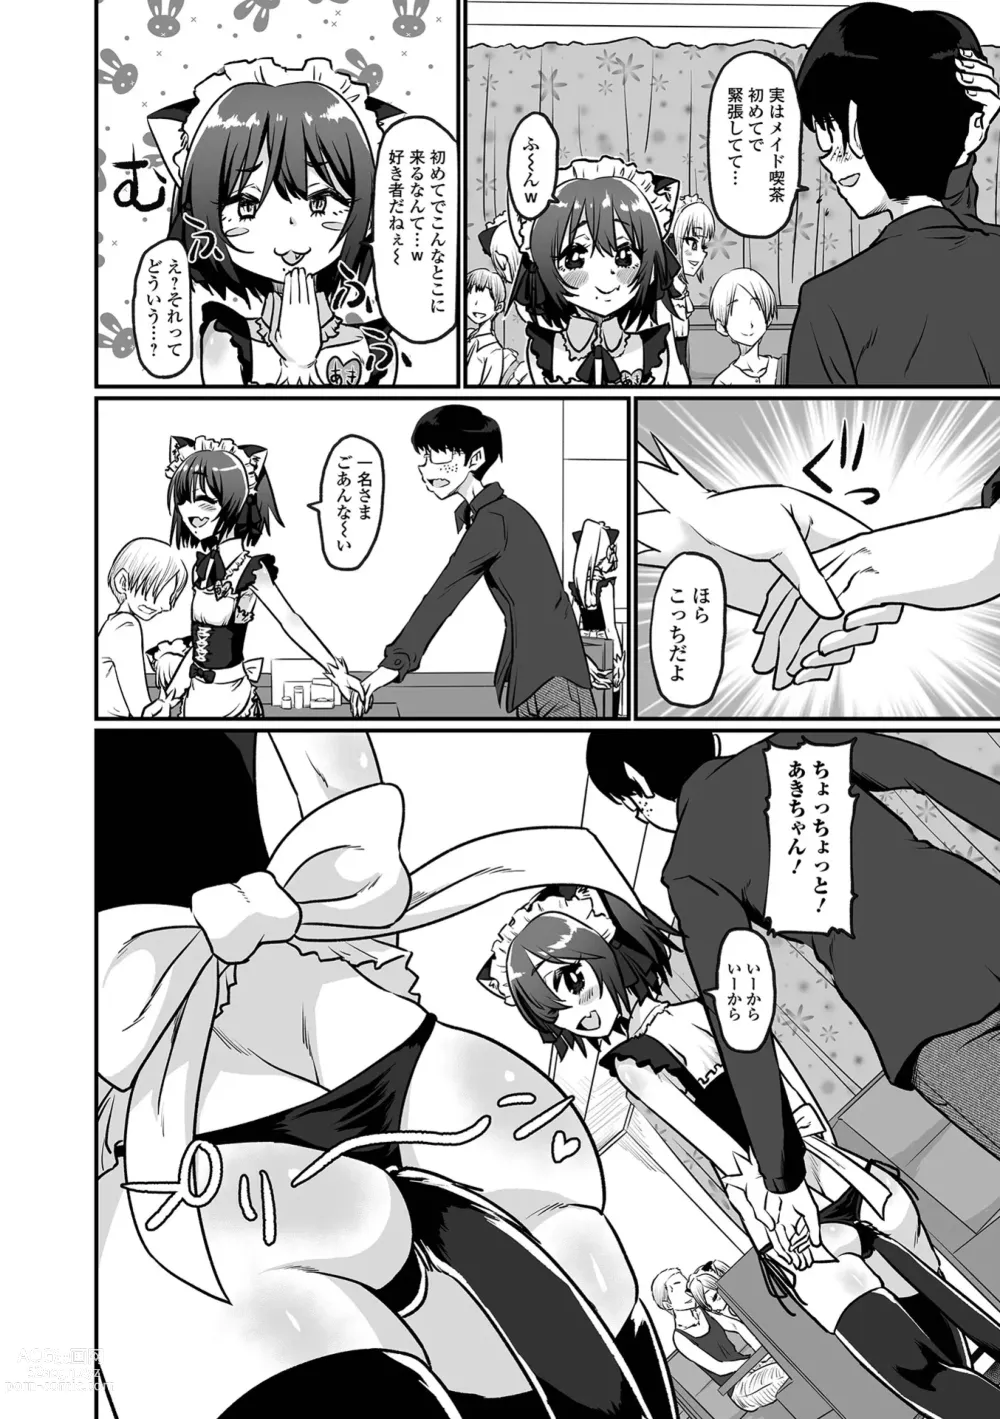 Page 4 of manga Kawaii Otokonoko wa Suki Desuka?